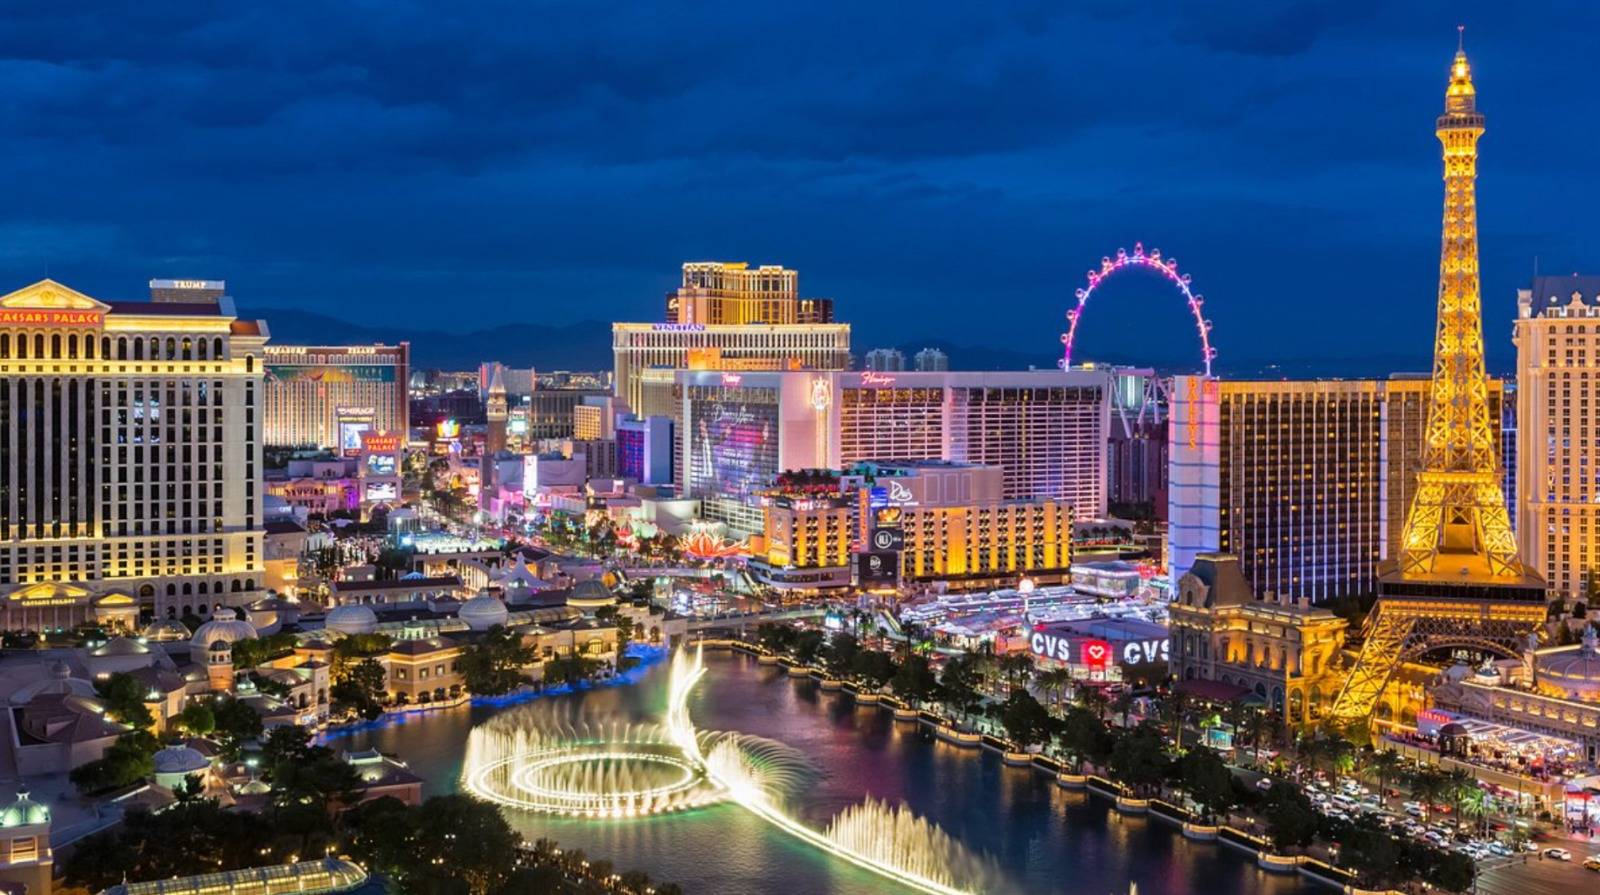 7 mituri false despre Las Vegas